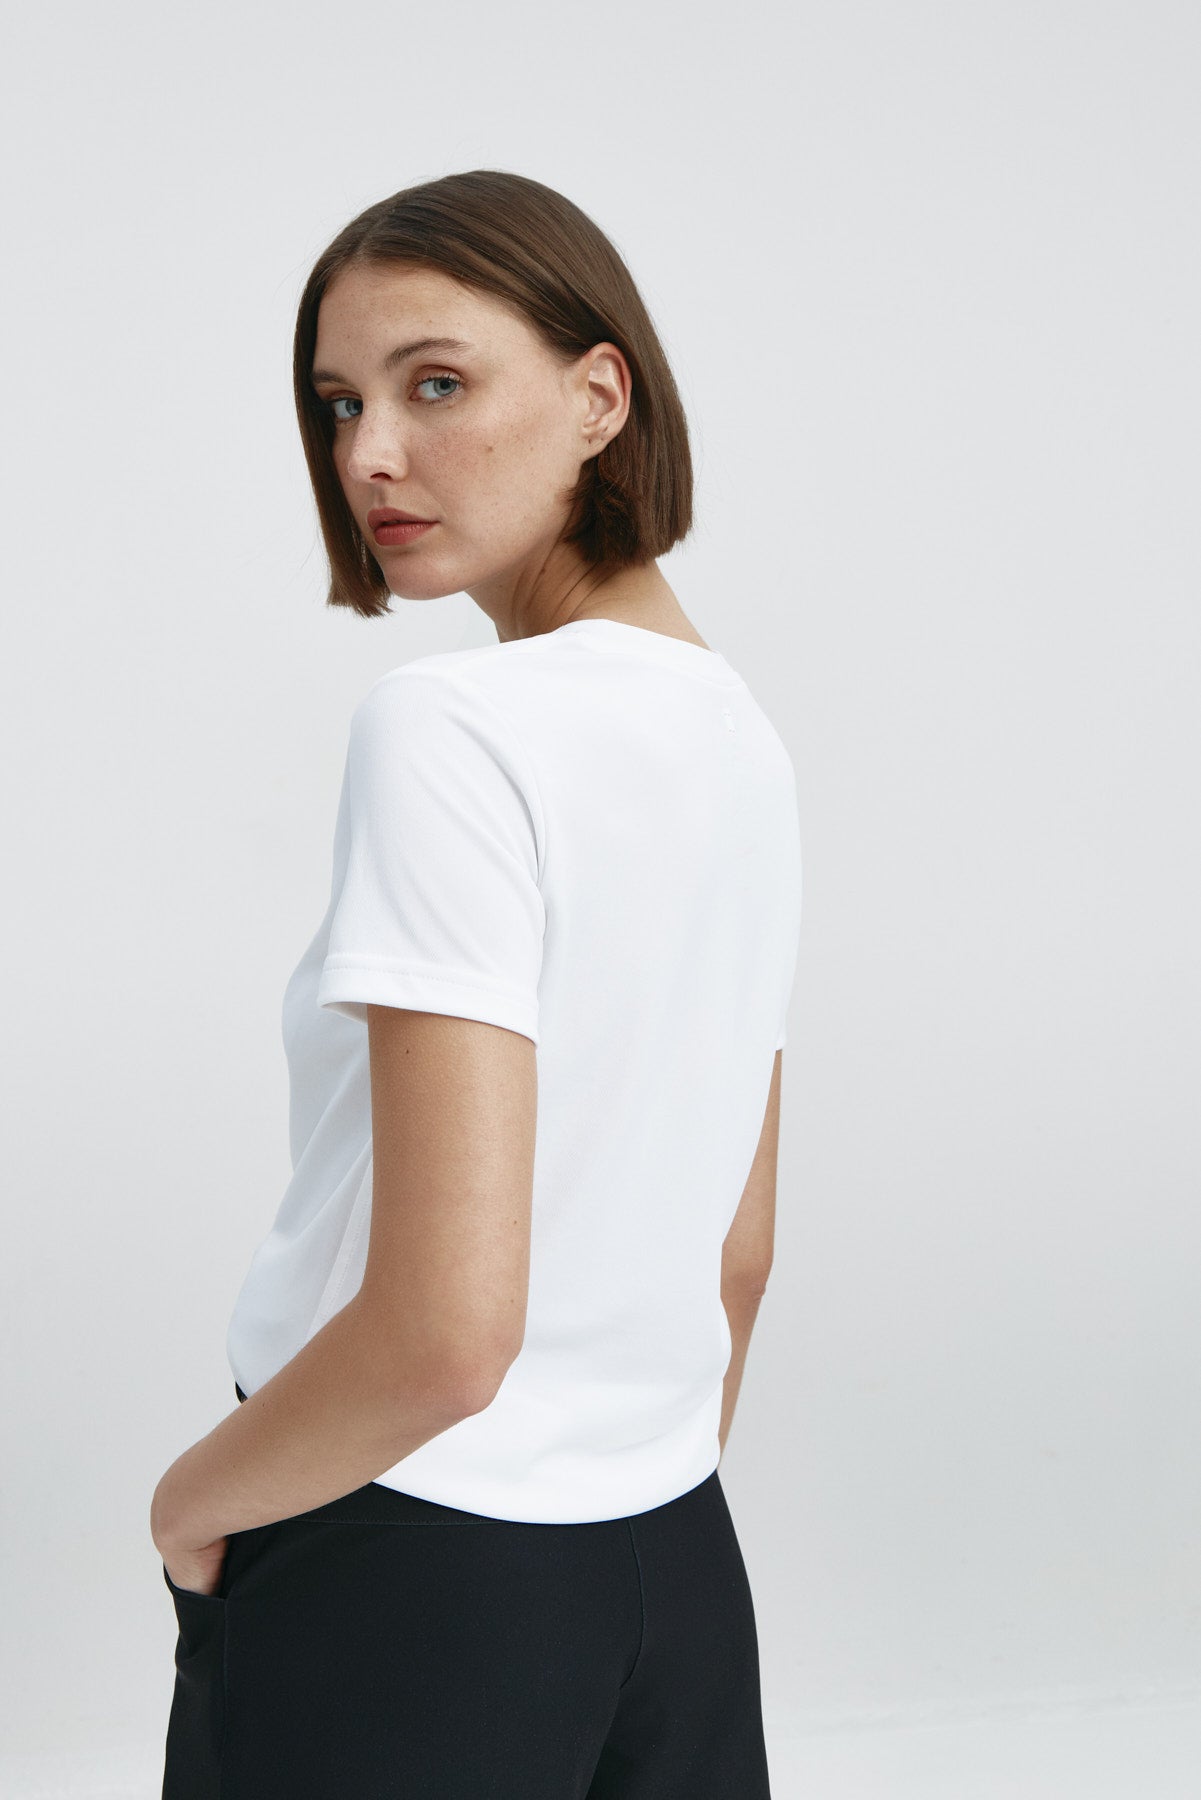 Camiseta básica de mujer blanca de manga corta, antiarrugas y antimanchas. Foto espalda